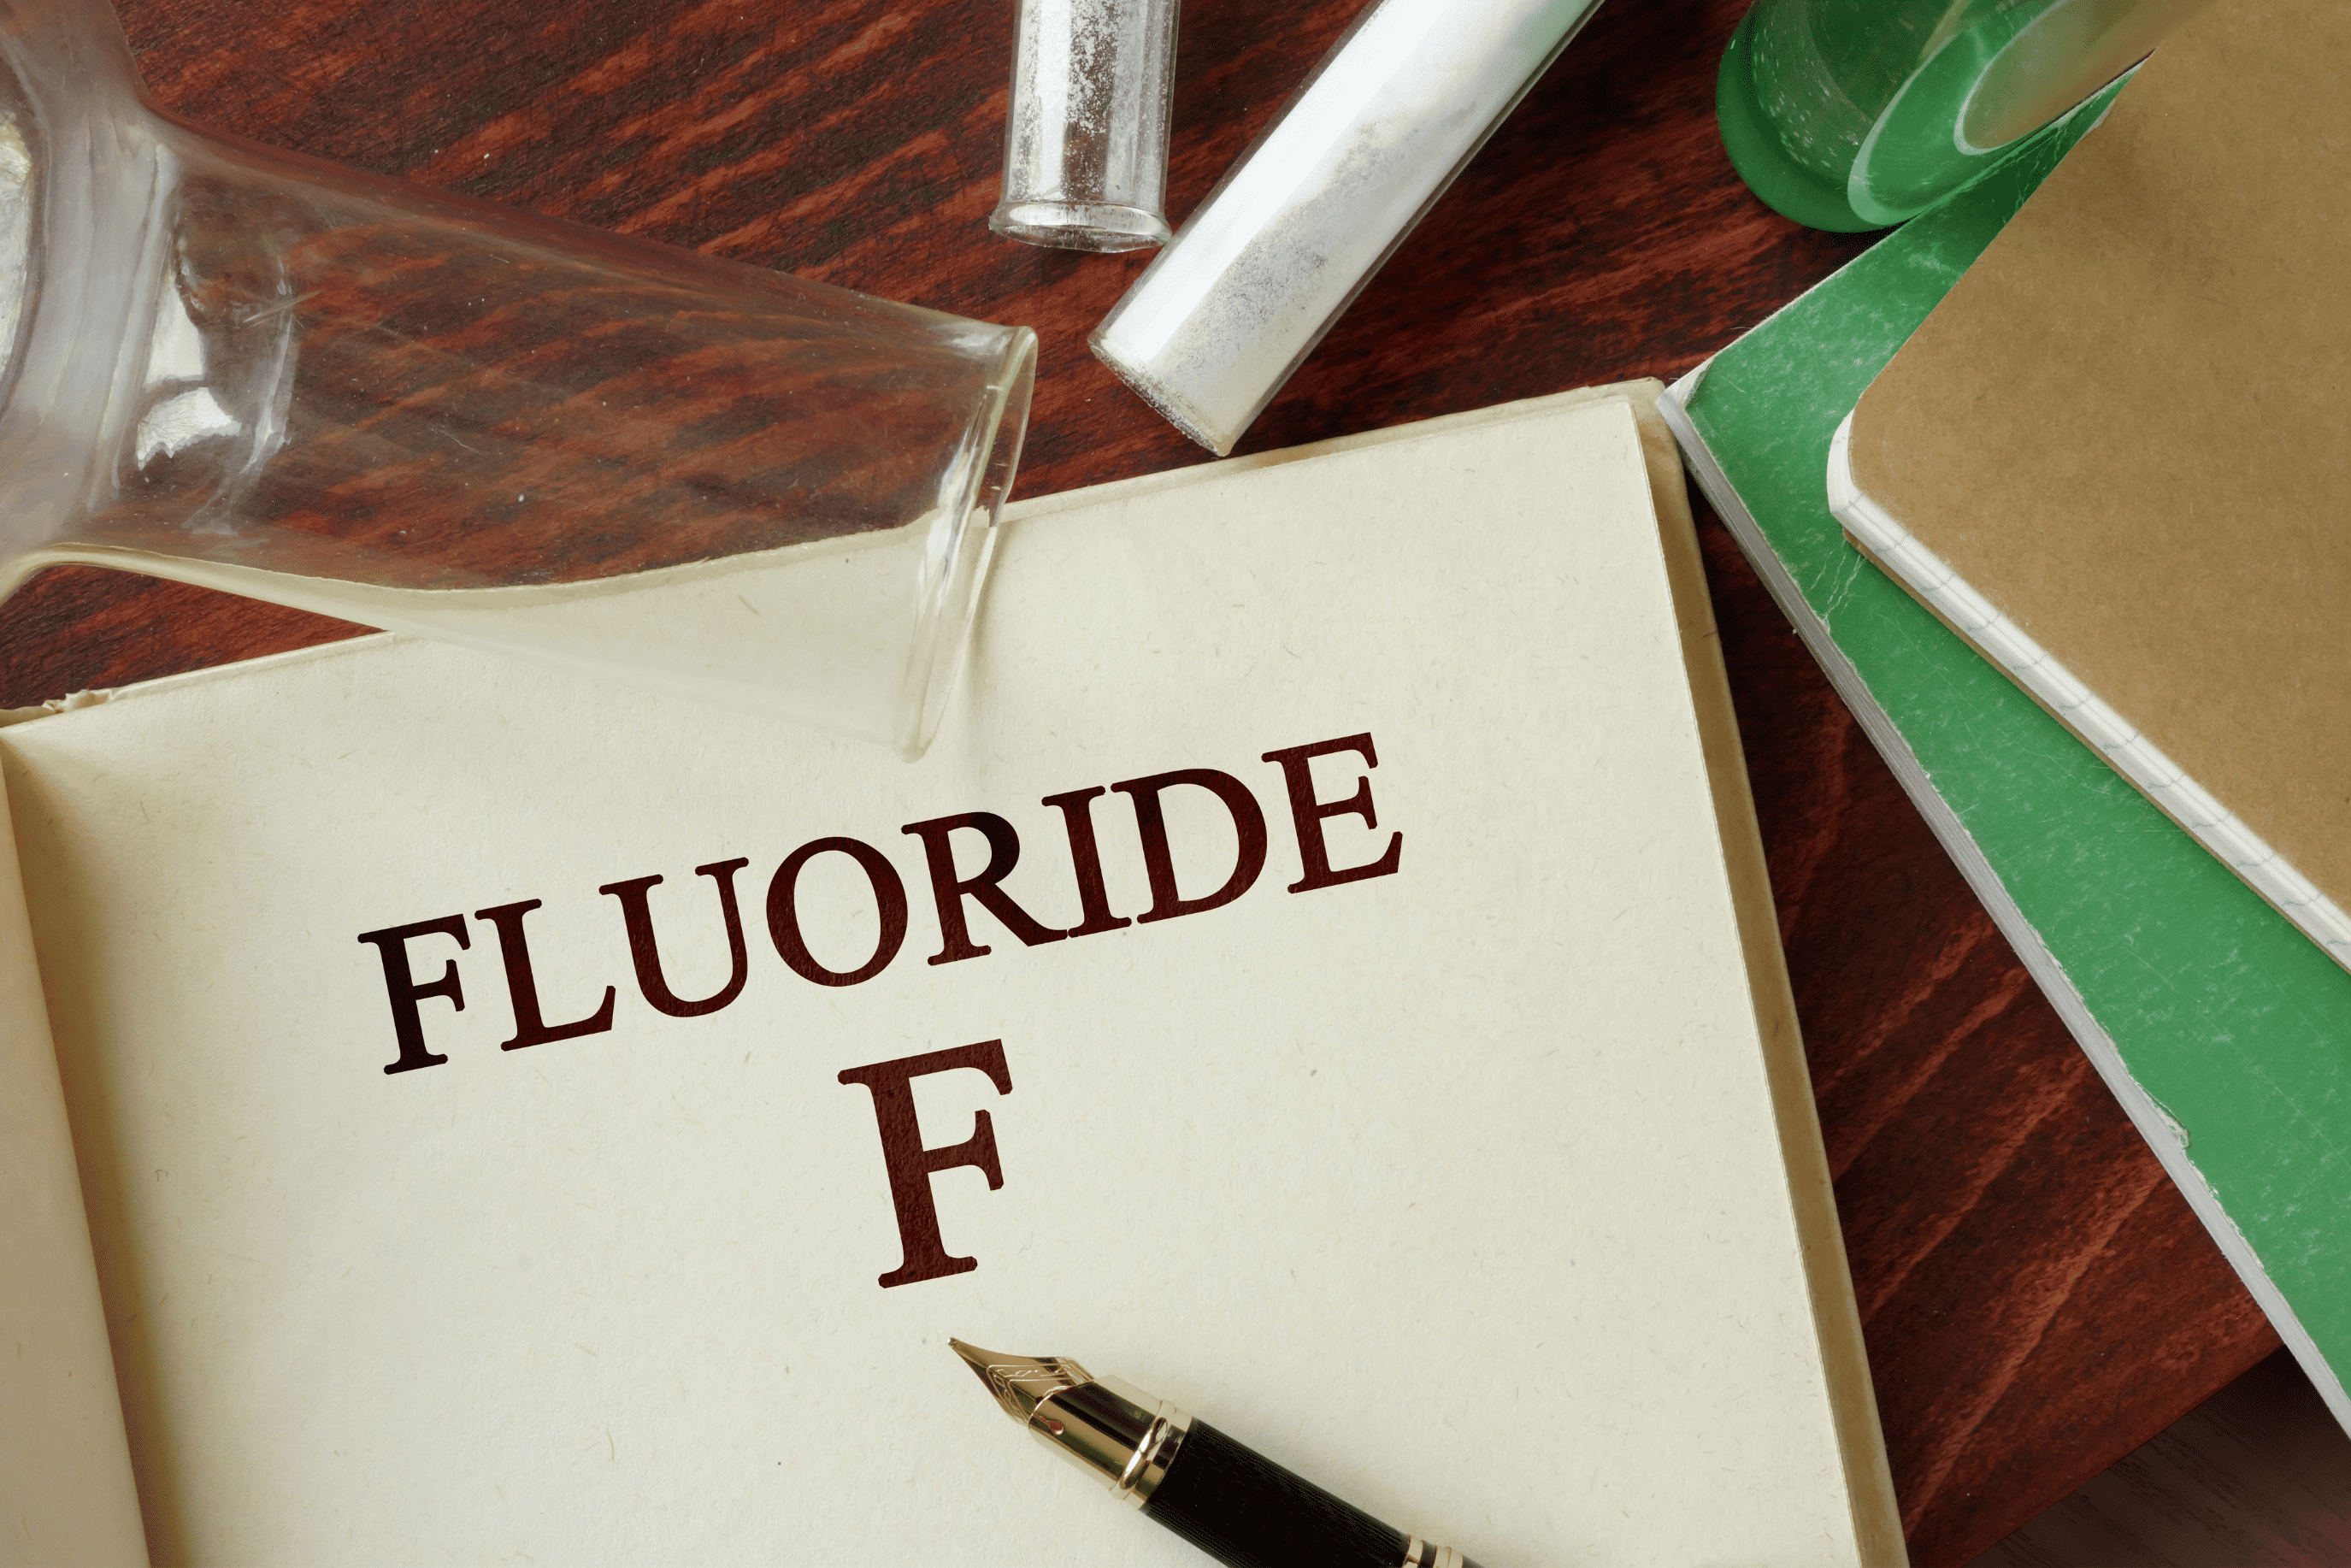 Best Fluoride Water Filters